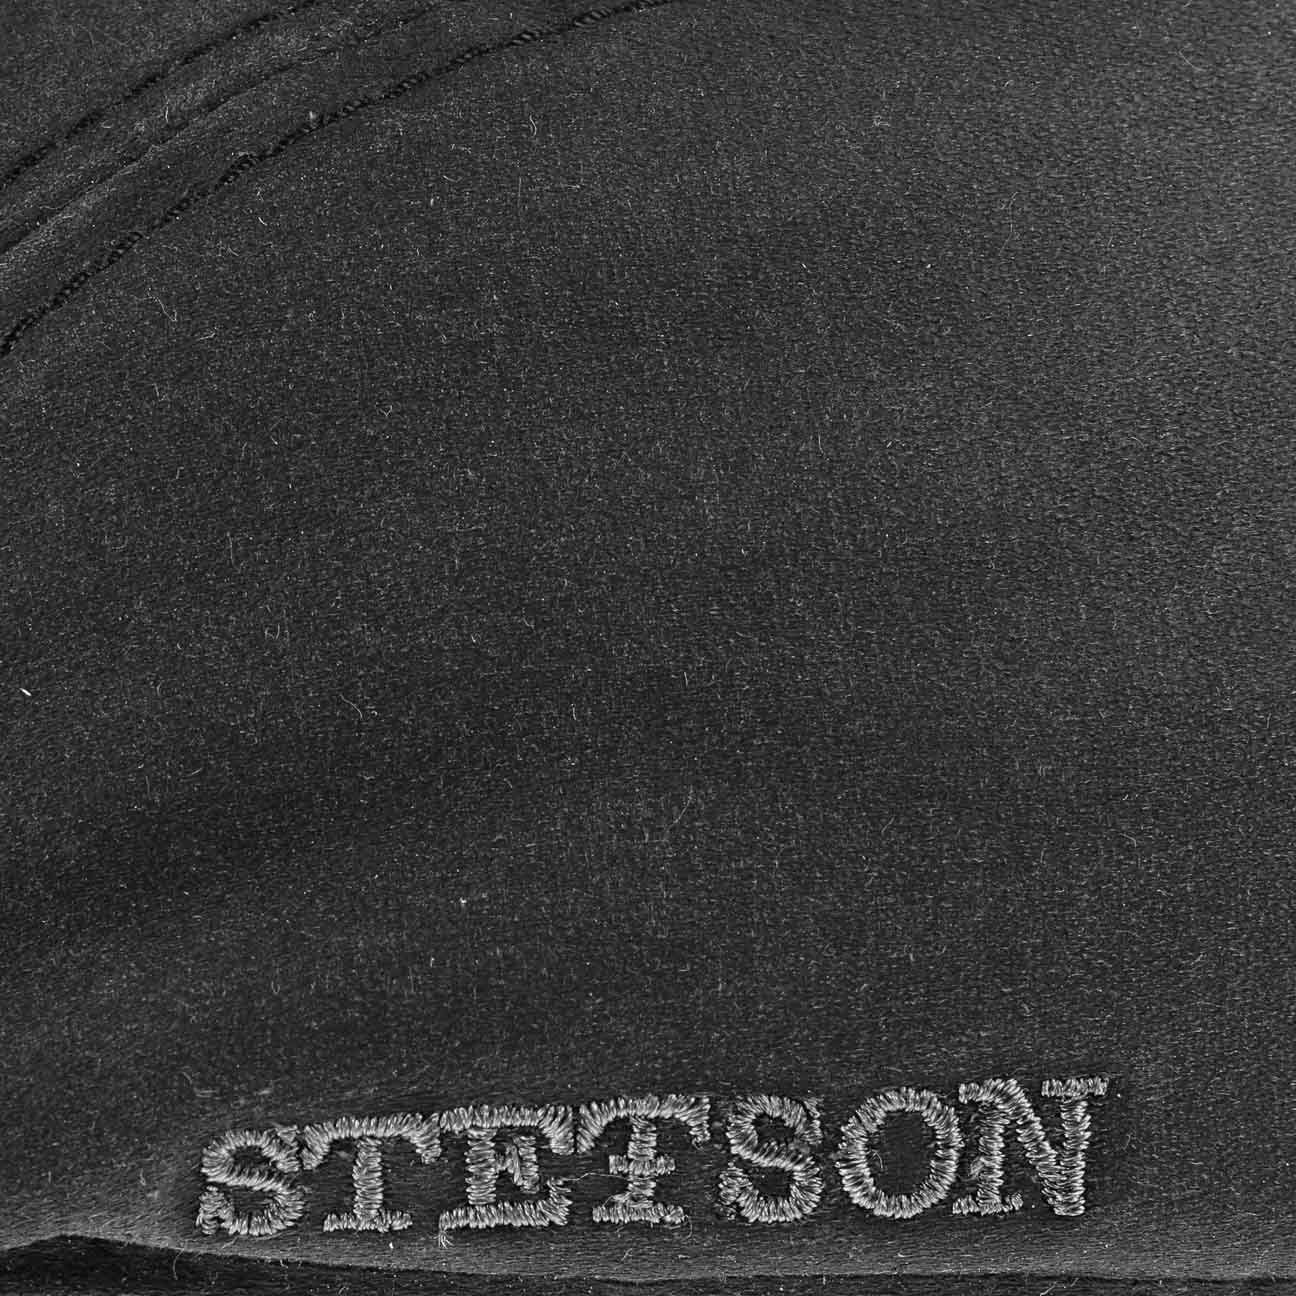 mit Flatcap (1-St) Schirm Cap Flat Stetson schwarz